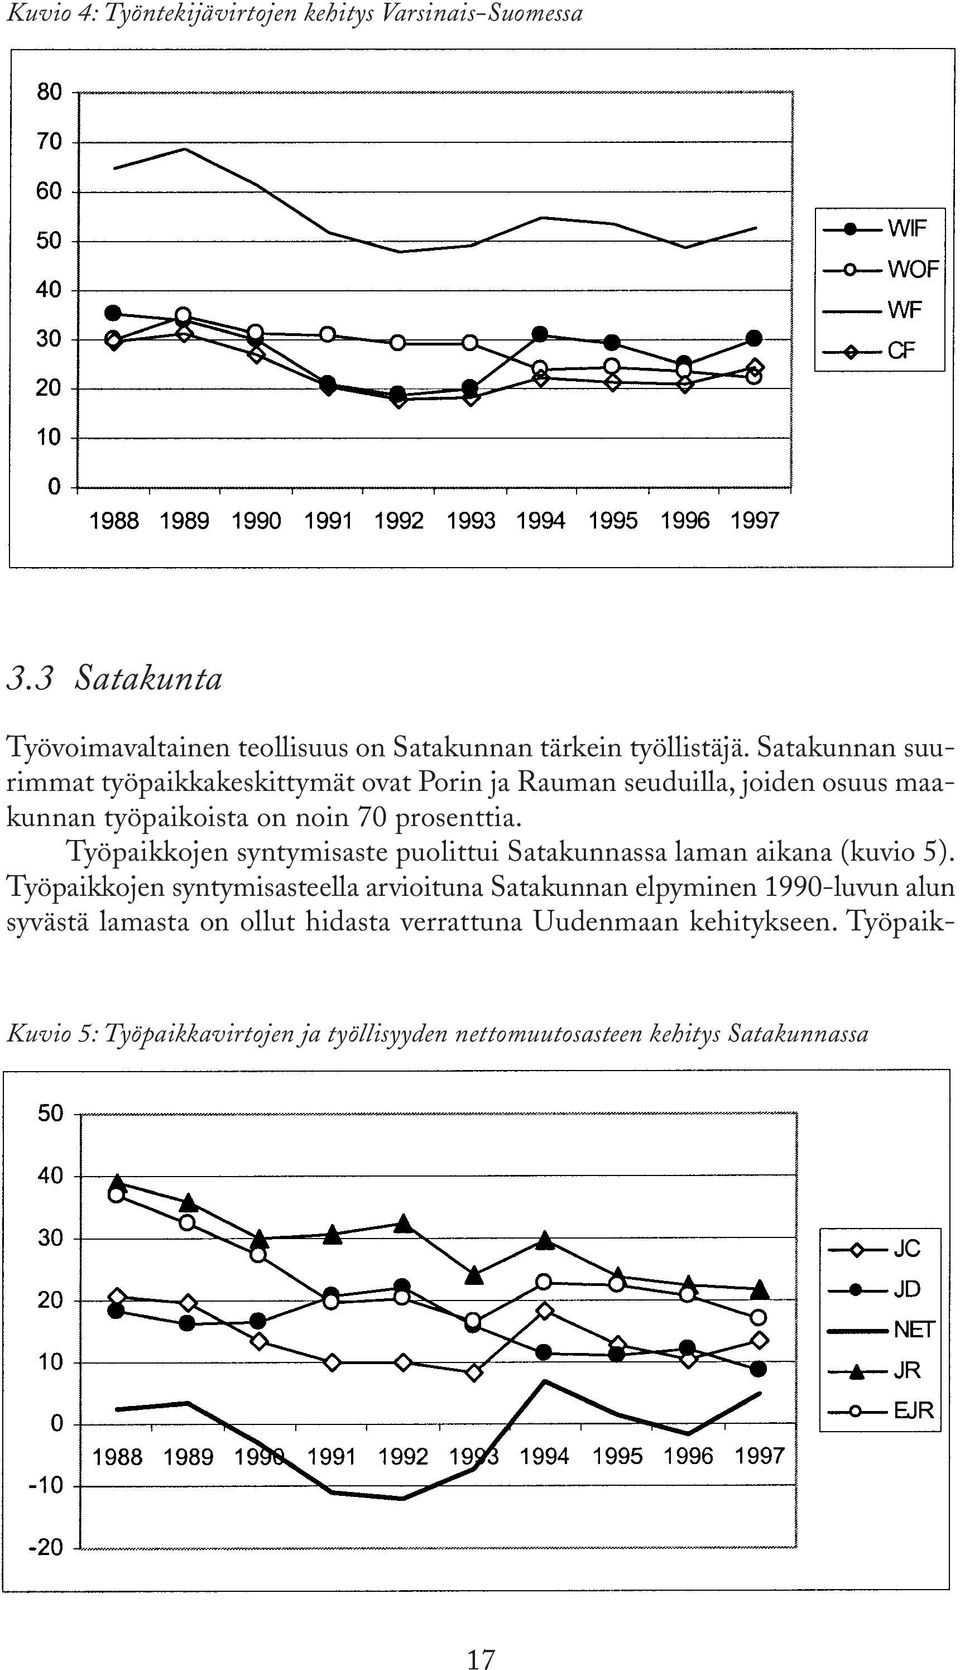 Työpaikkojen syntymisaste puolittui Satakunnassa laman aikana (kuvio 5).